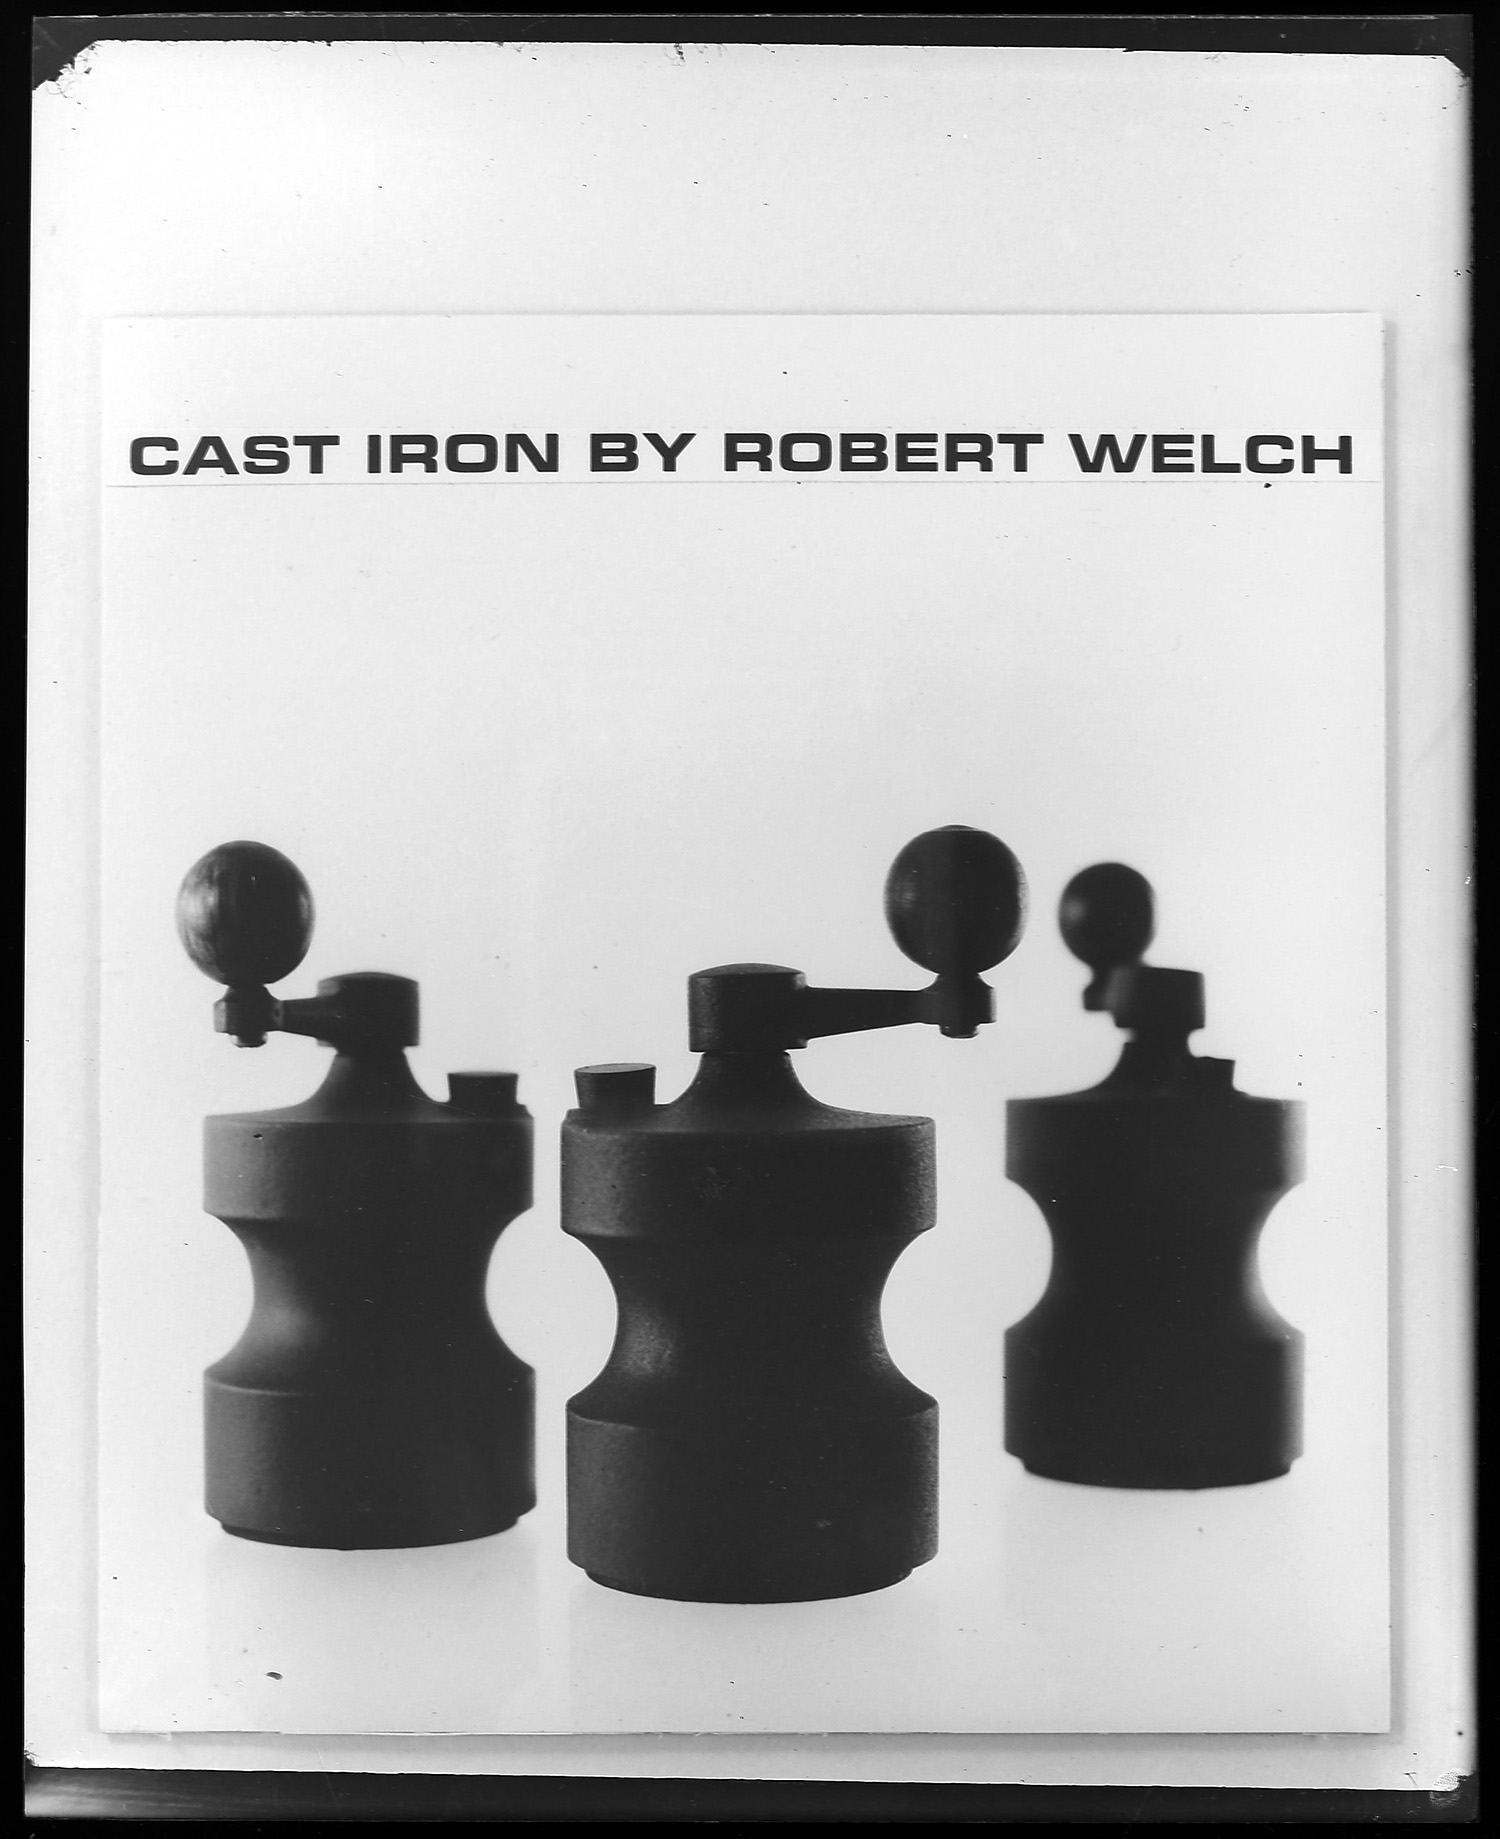 Cast Iron by Robert Welch